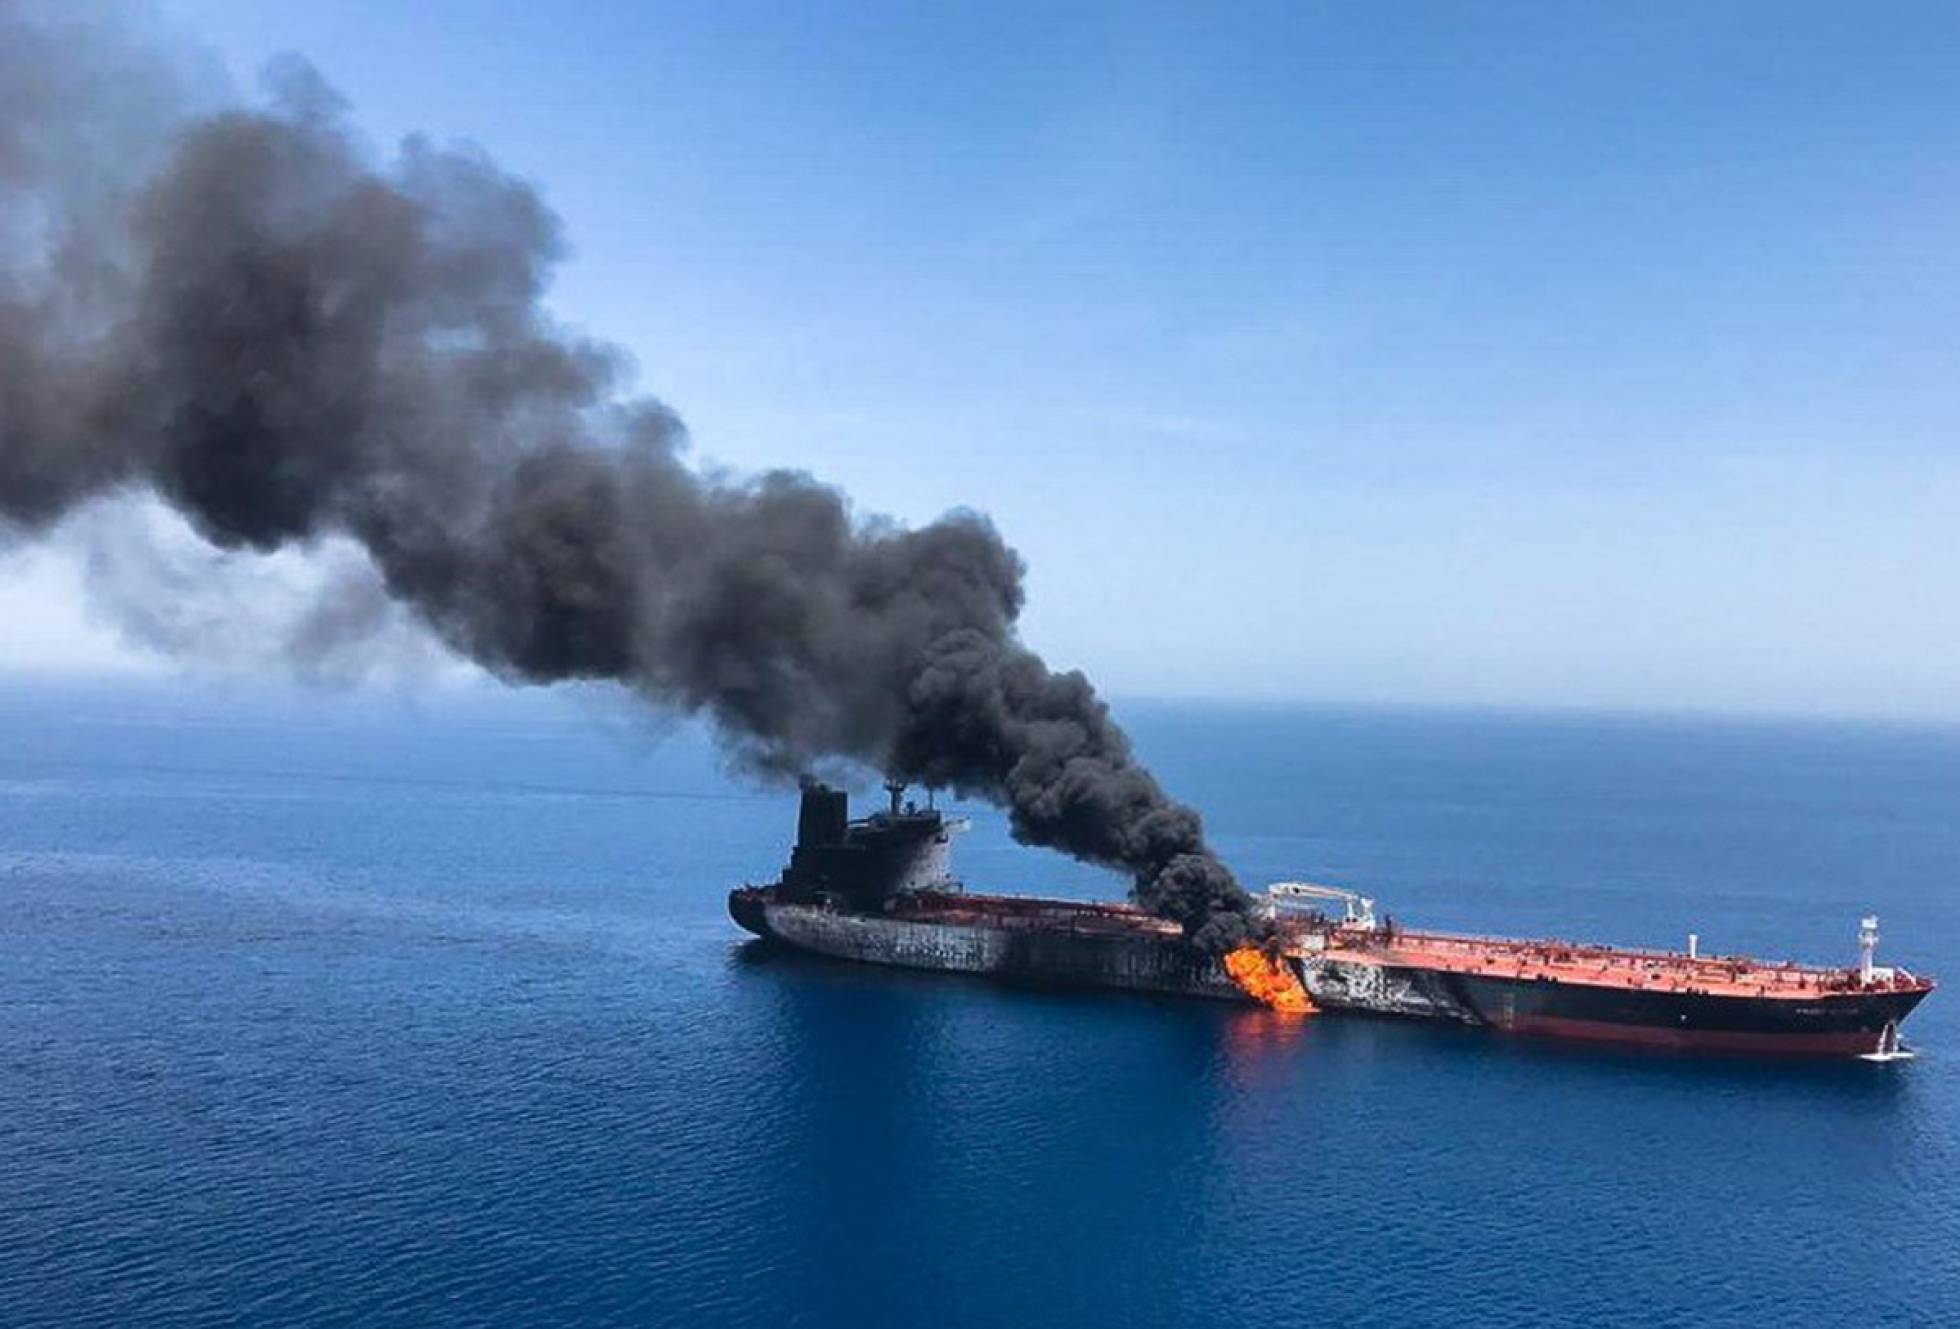 Un nuevo ataque a dos petroleros en el golfo de Omán dispara las alarmas en la región 1560411419_650275_1560433176_noticia_normal_recorte1